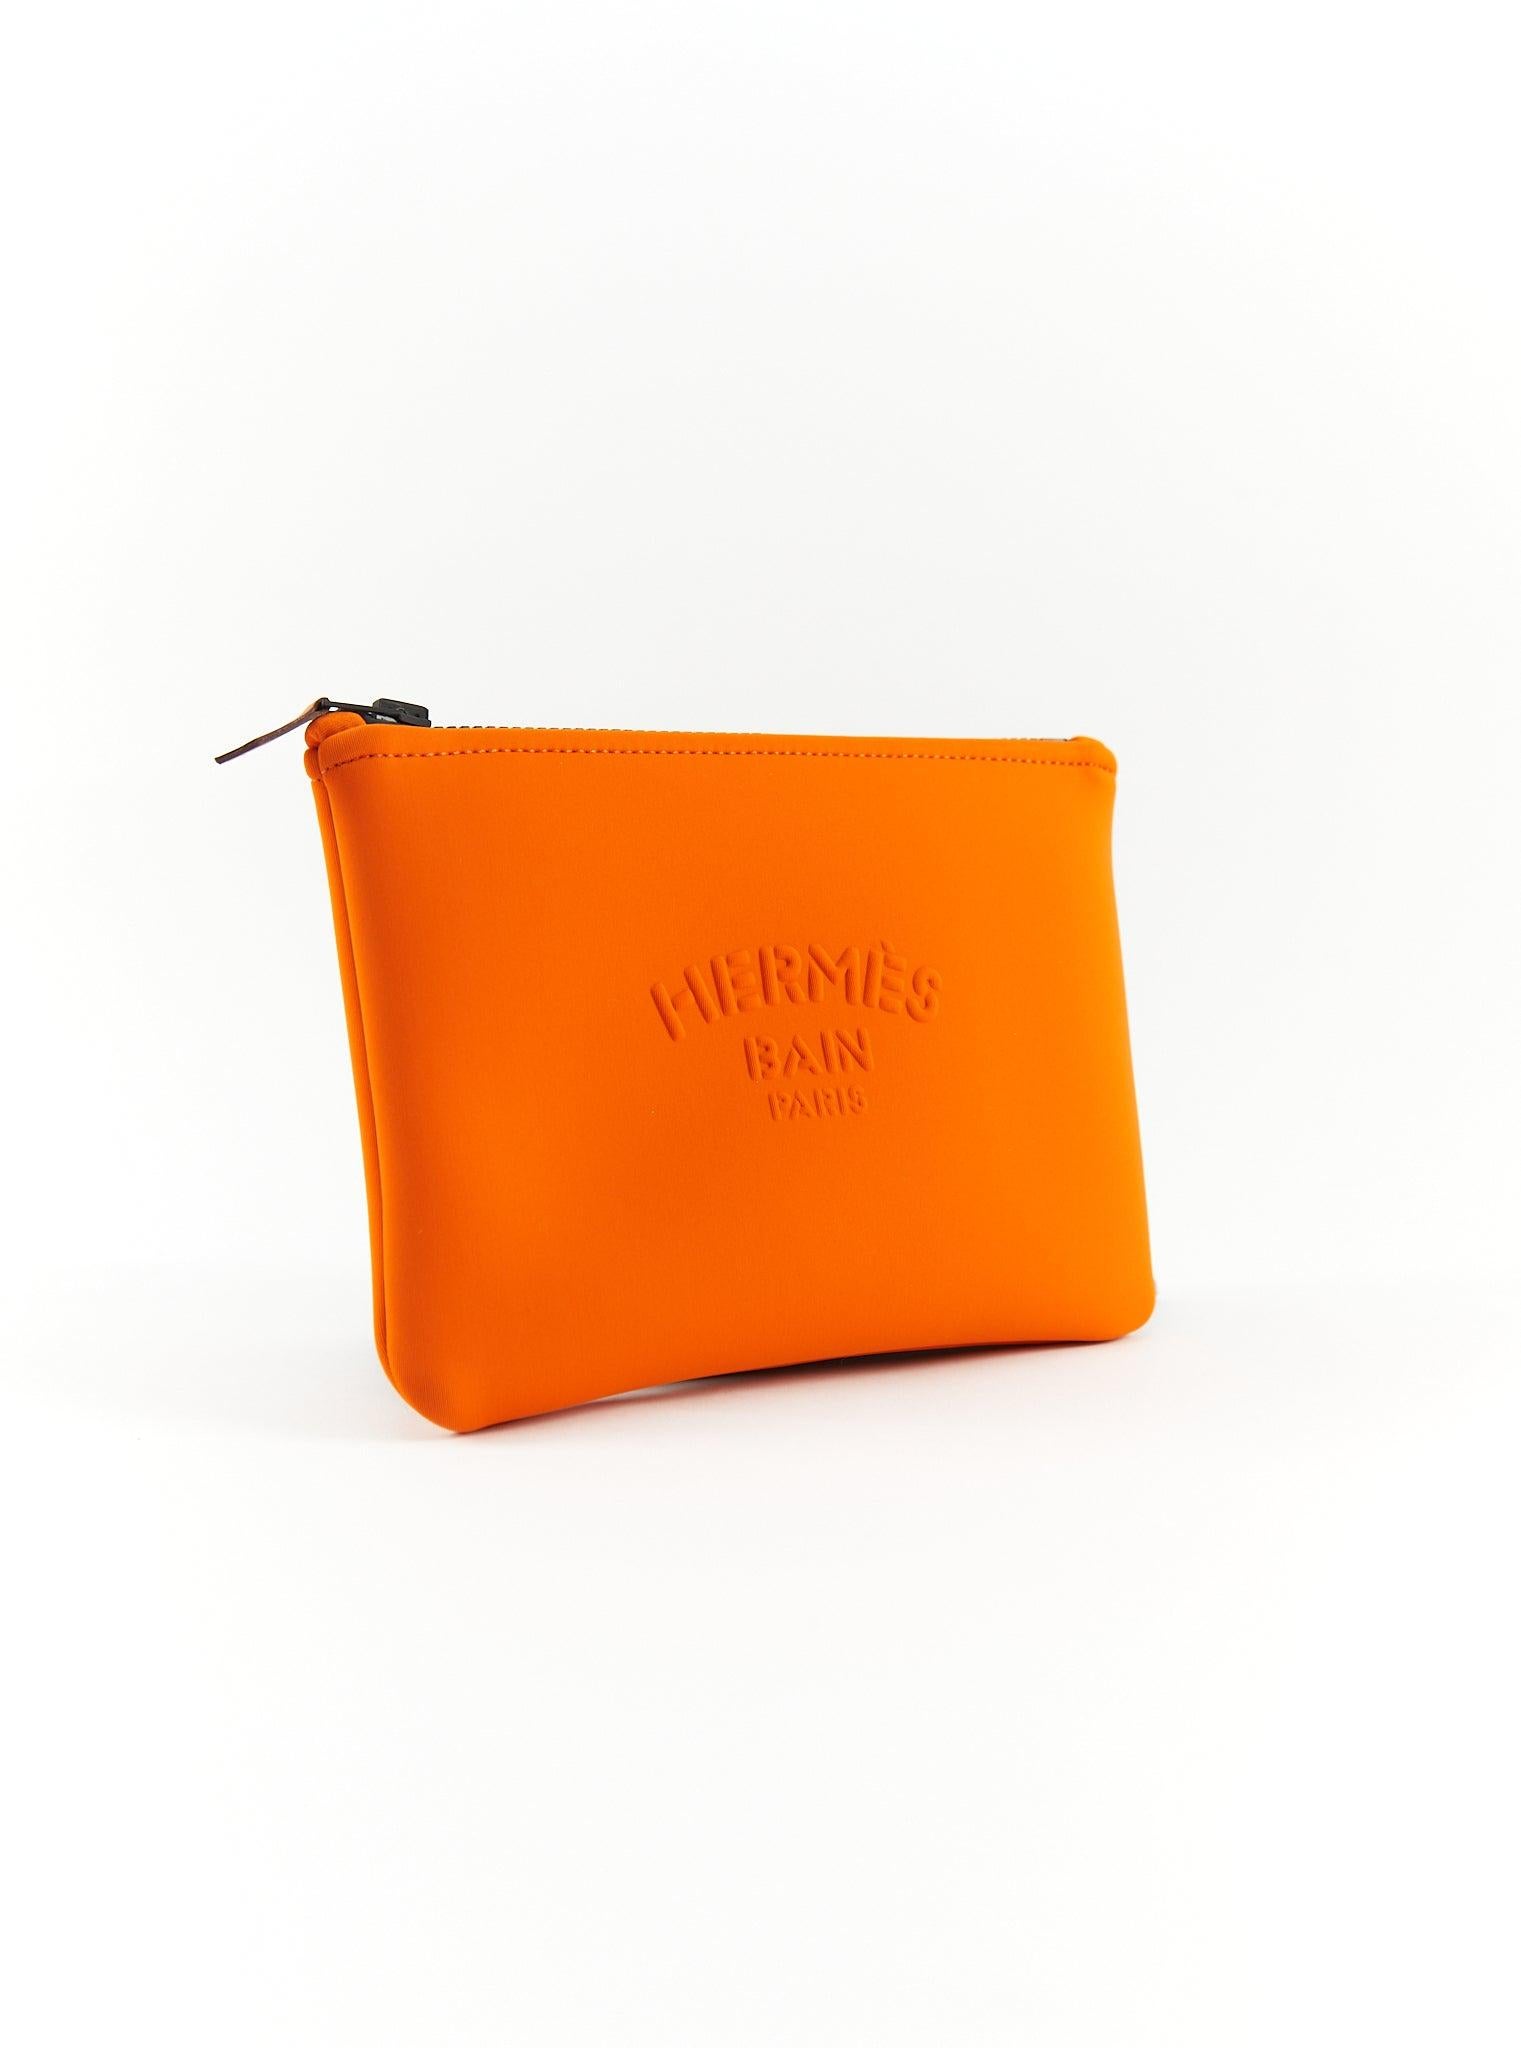 Mallette Hermès Neobain en orange

Fermeture à glissière avec tirette en cuir 

80% polyamide et 20% élasthanne

Petit modèle 

Dimensions : L 21 x H 15 cm

Fabriqué en France